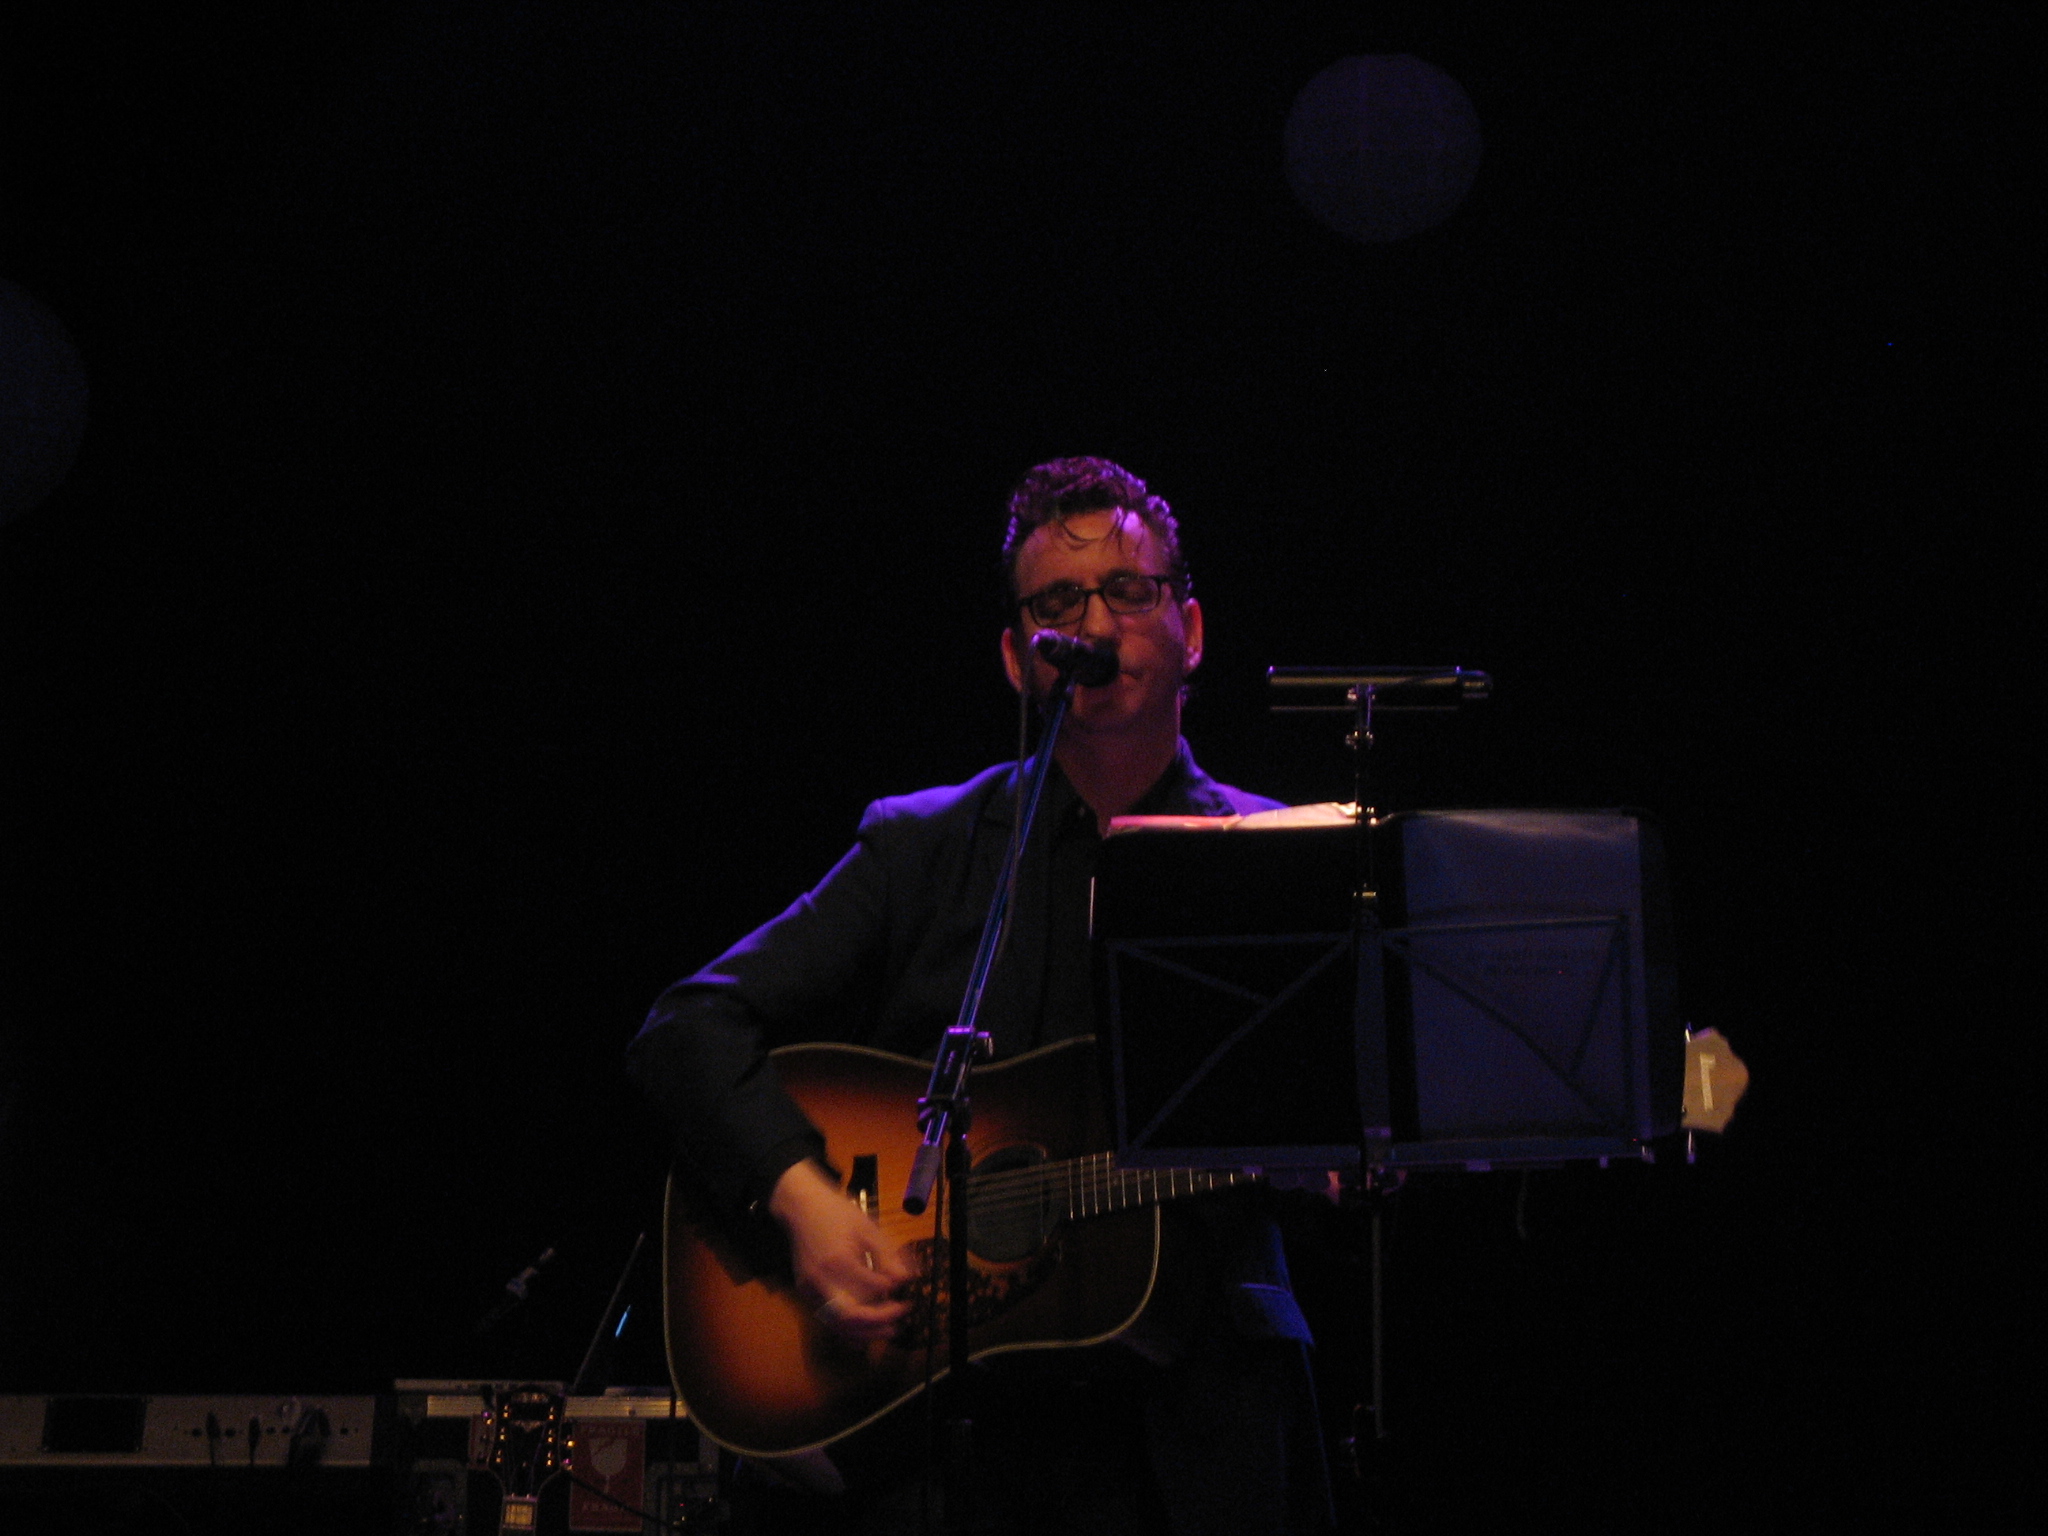 man singing in the dark while playing guitar